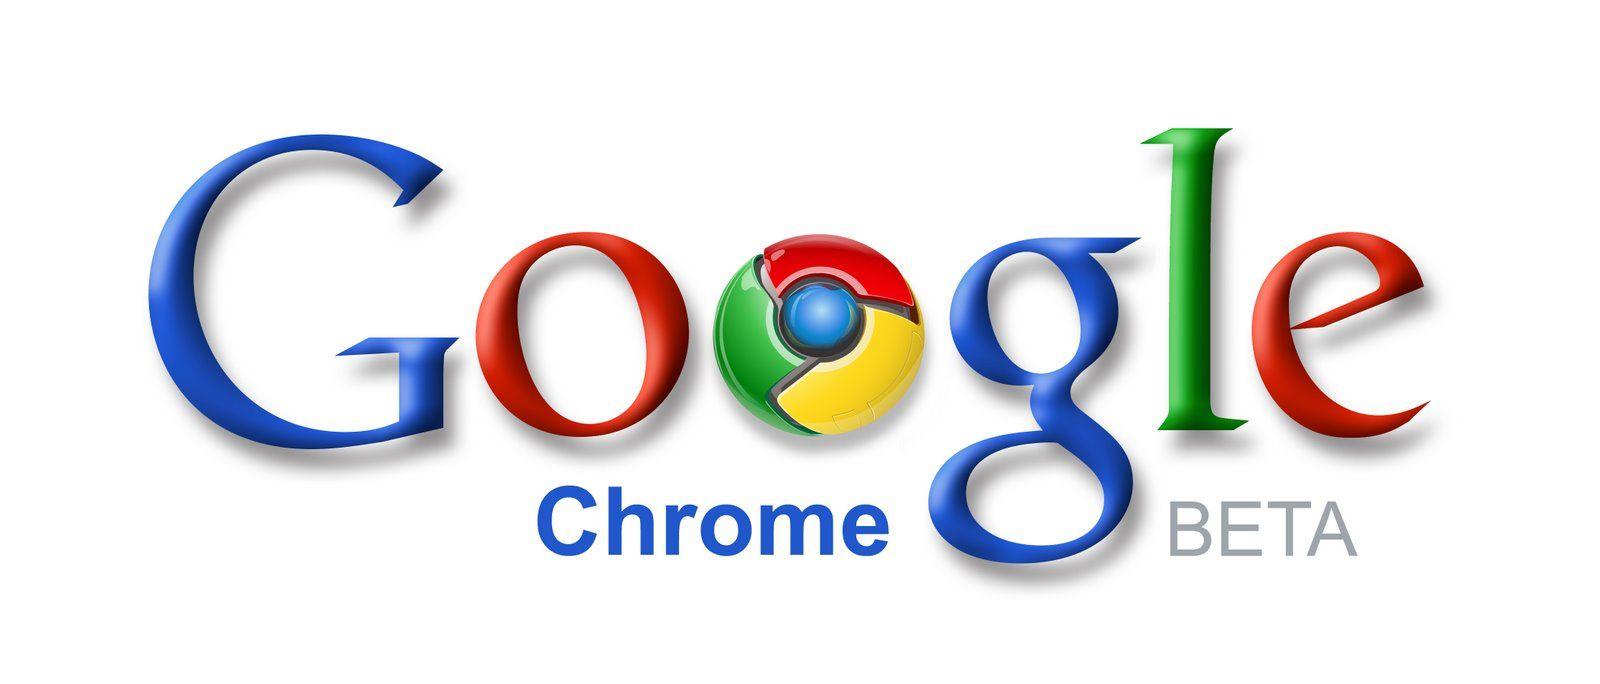 Chrome Logo - Google Chrome